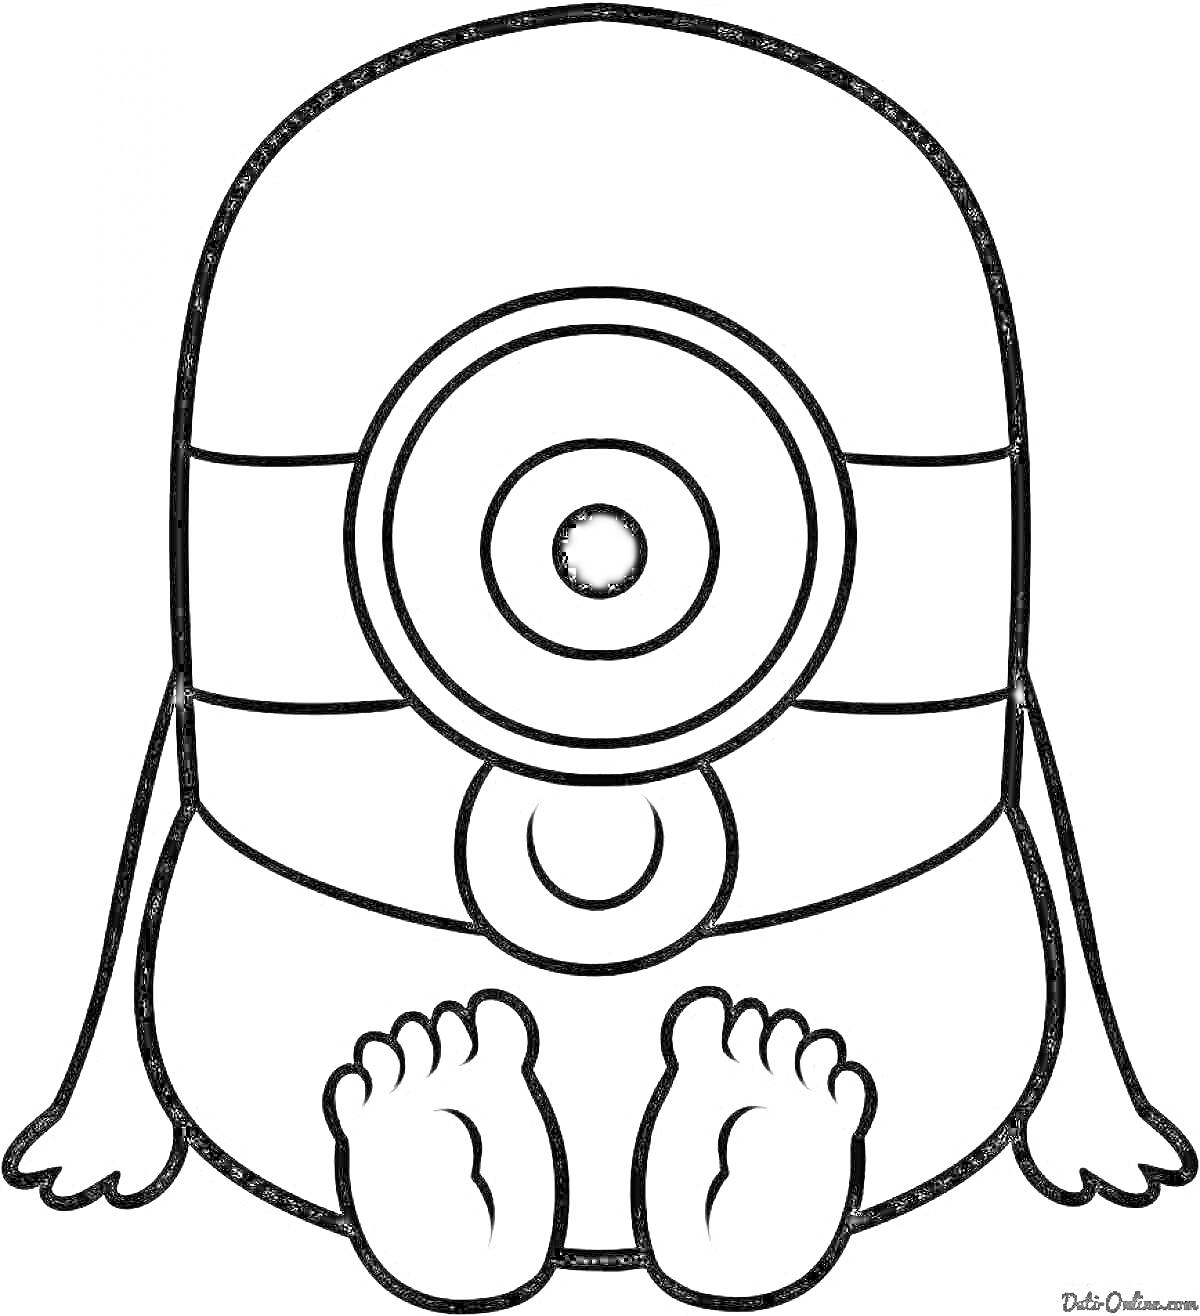 Раскраска Миньон сидящий с круглыми очками, без обуви